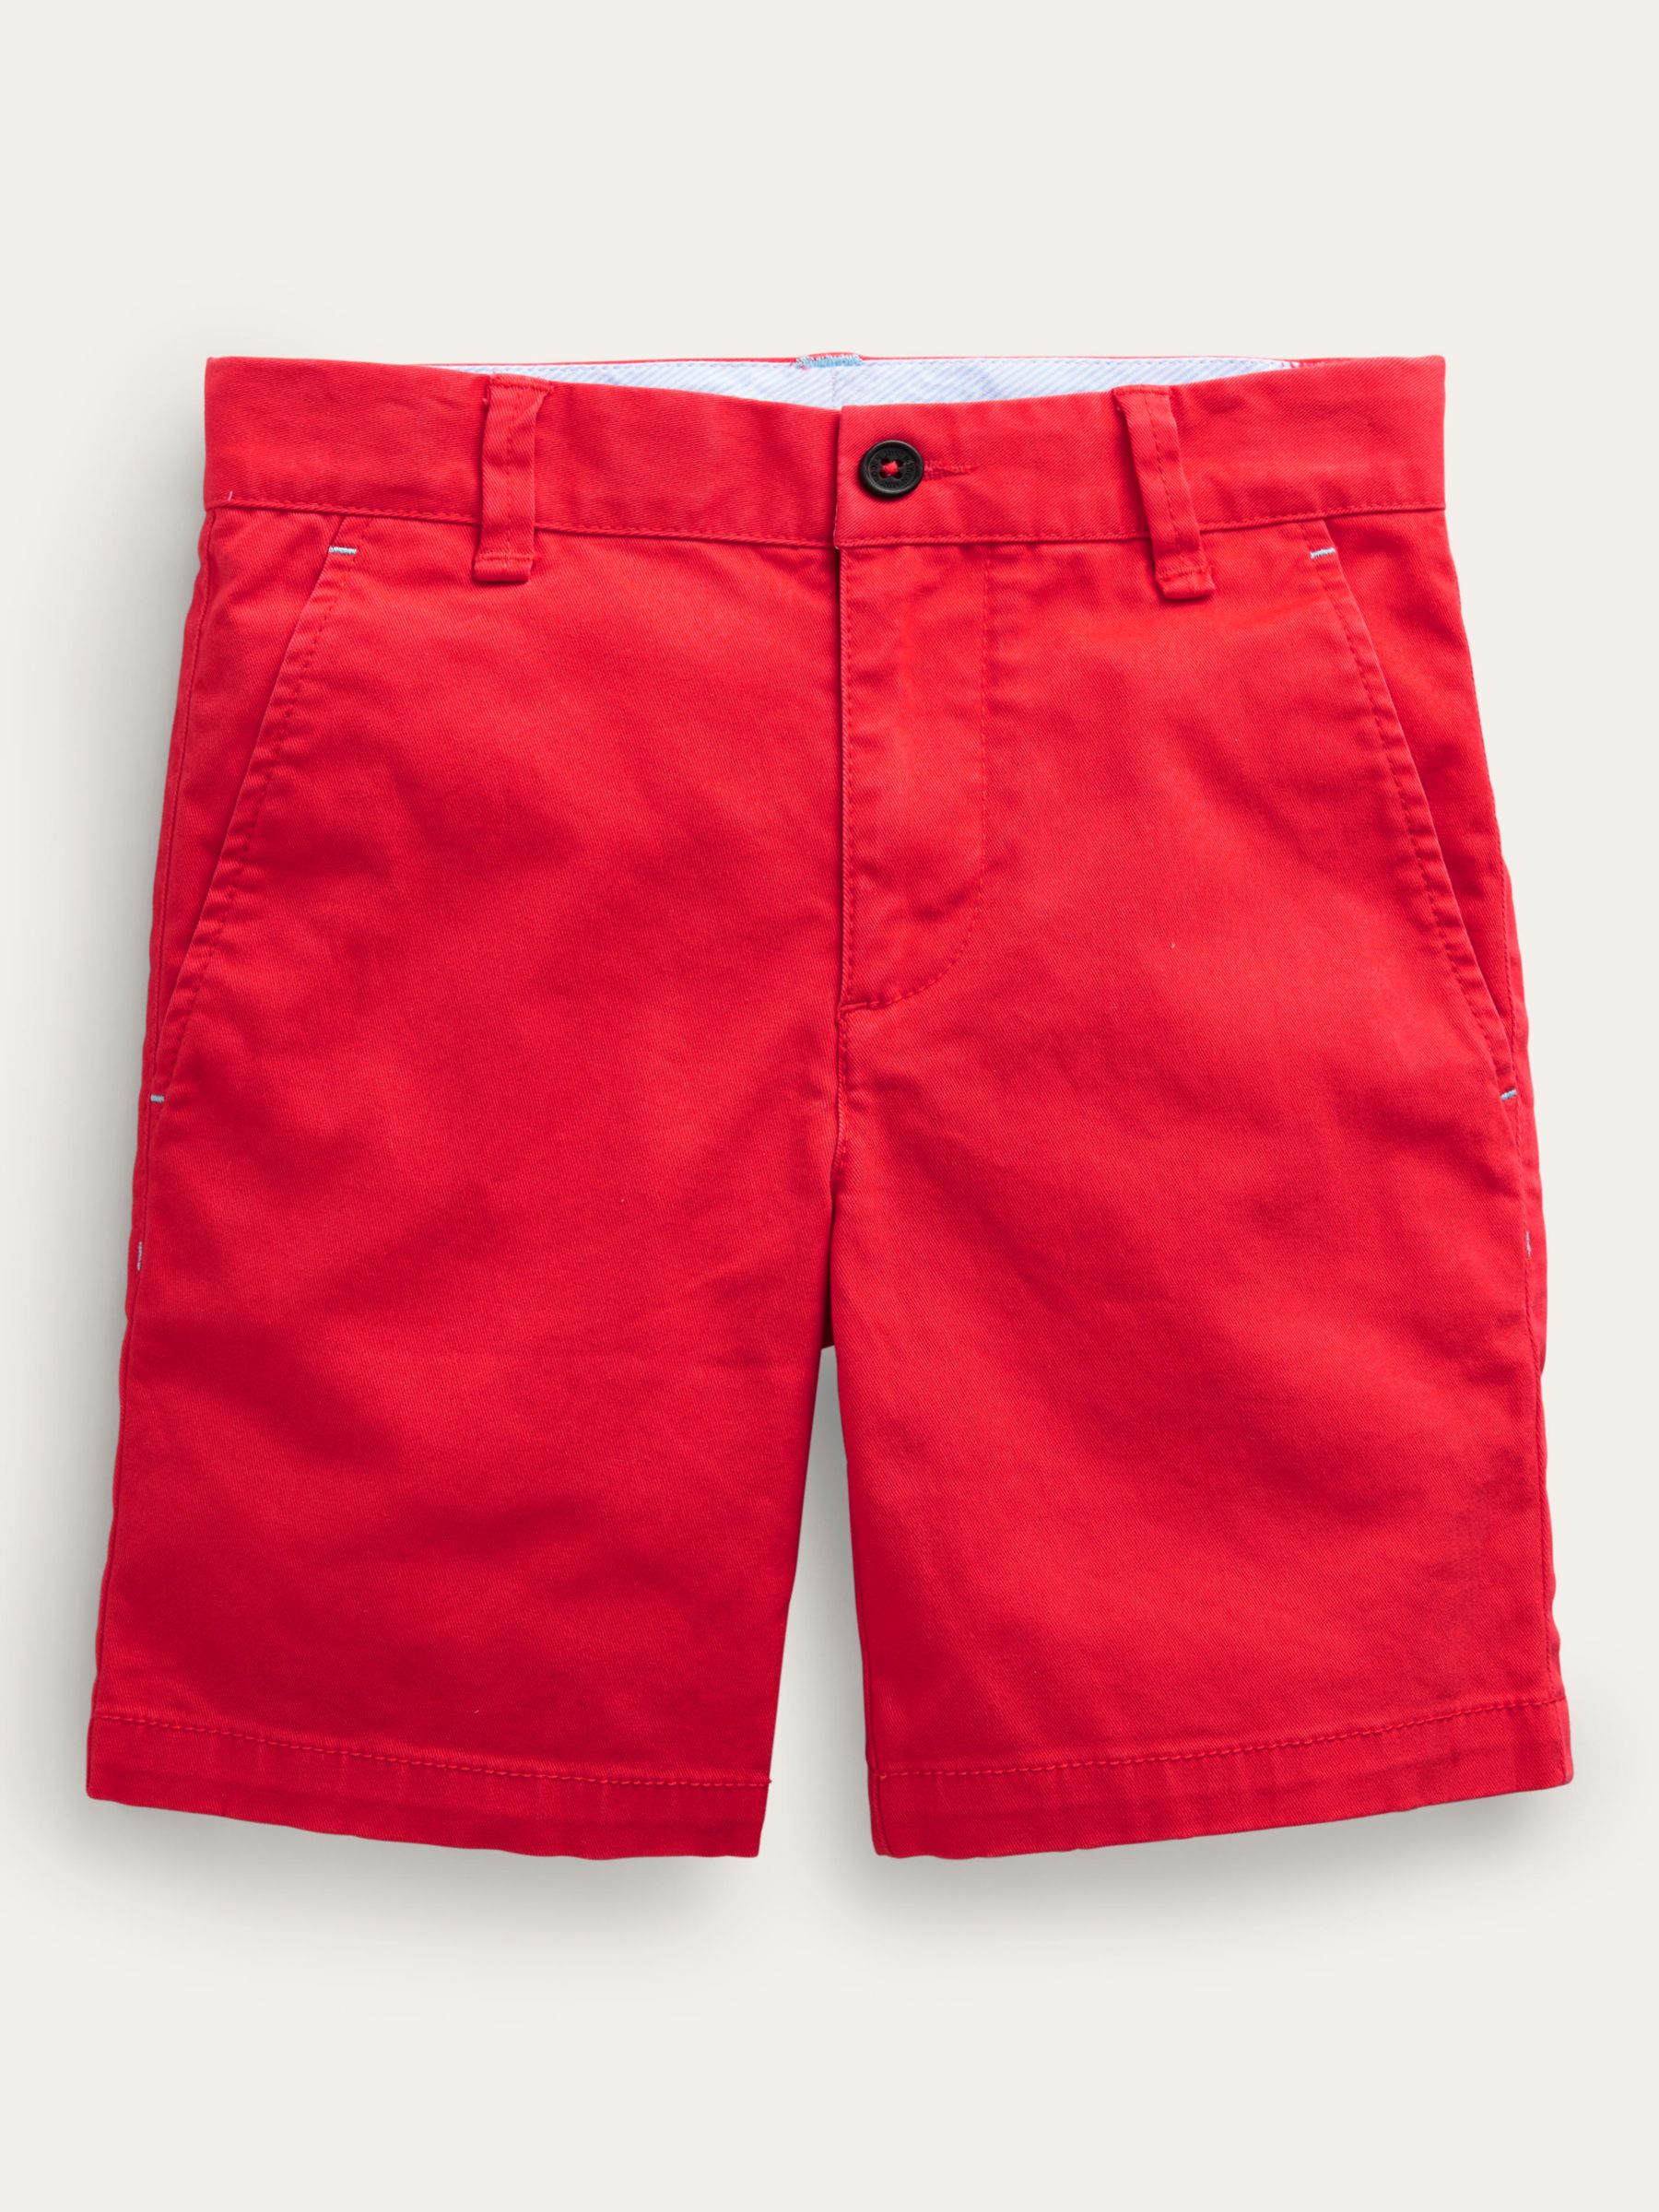 Mini Boden Kids' Classic Chino Shorts, Jam Red, 3 years